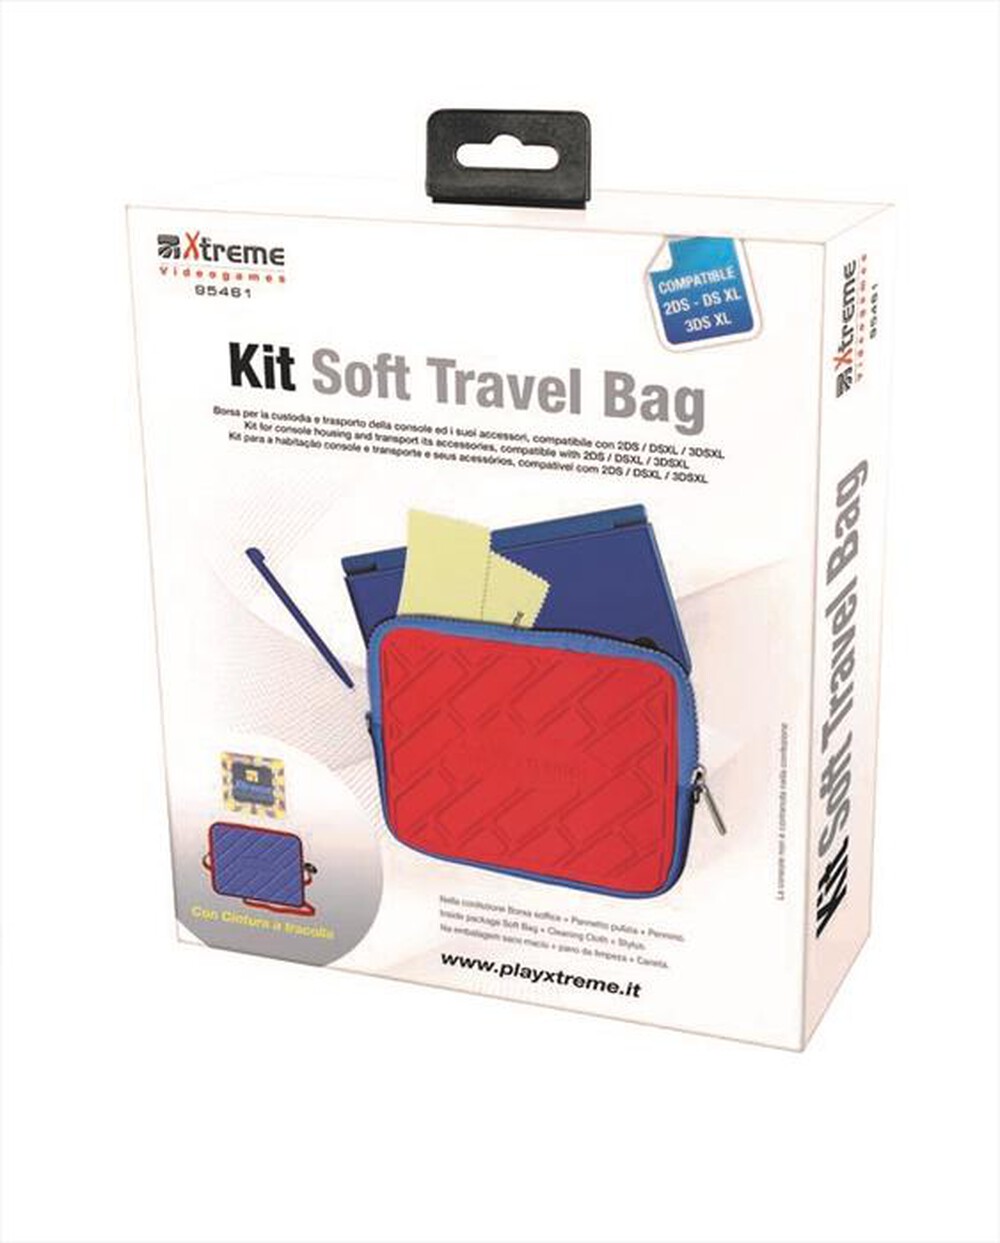 "XTREME - 95461 - Kit Soft Travel Bag"